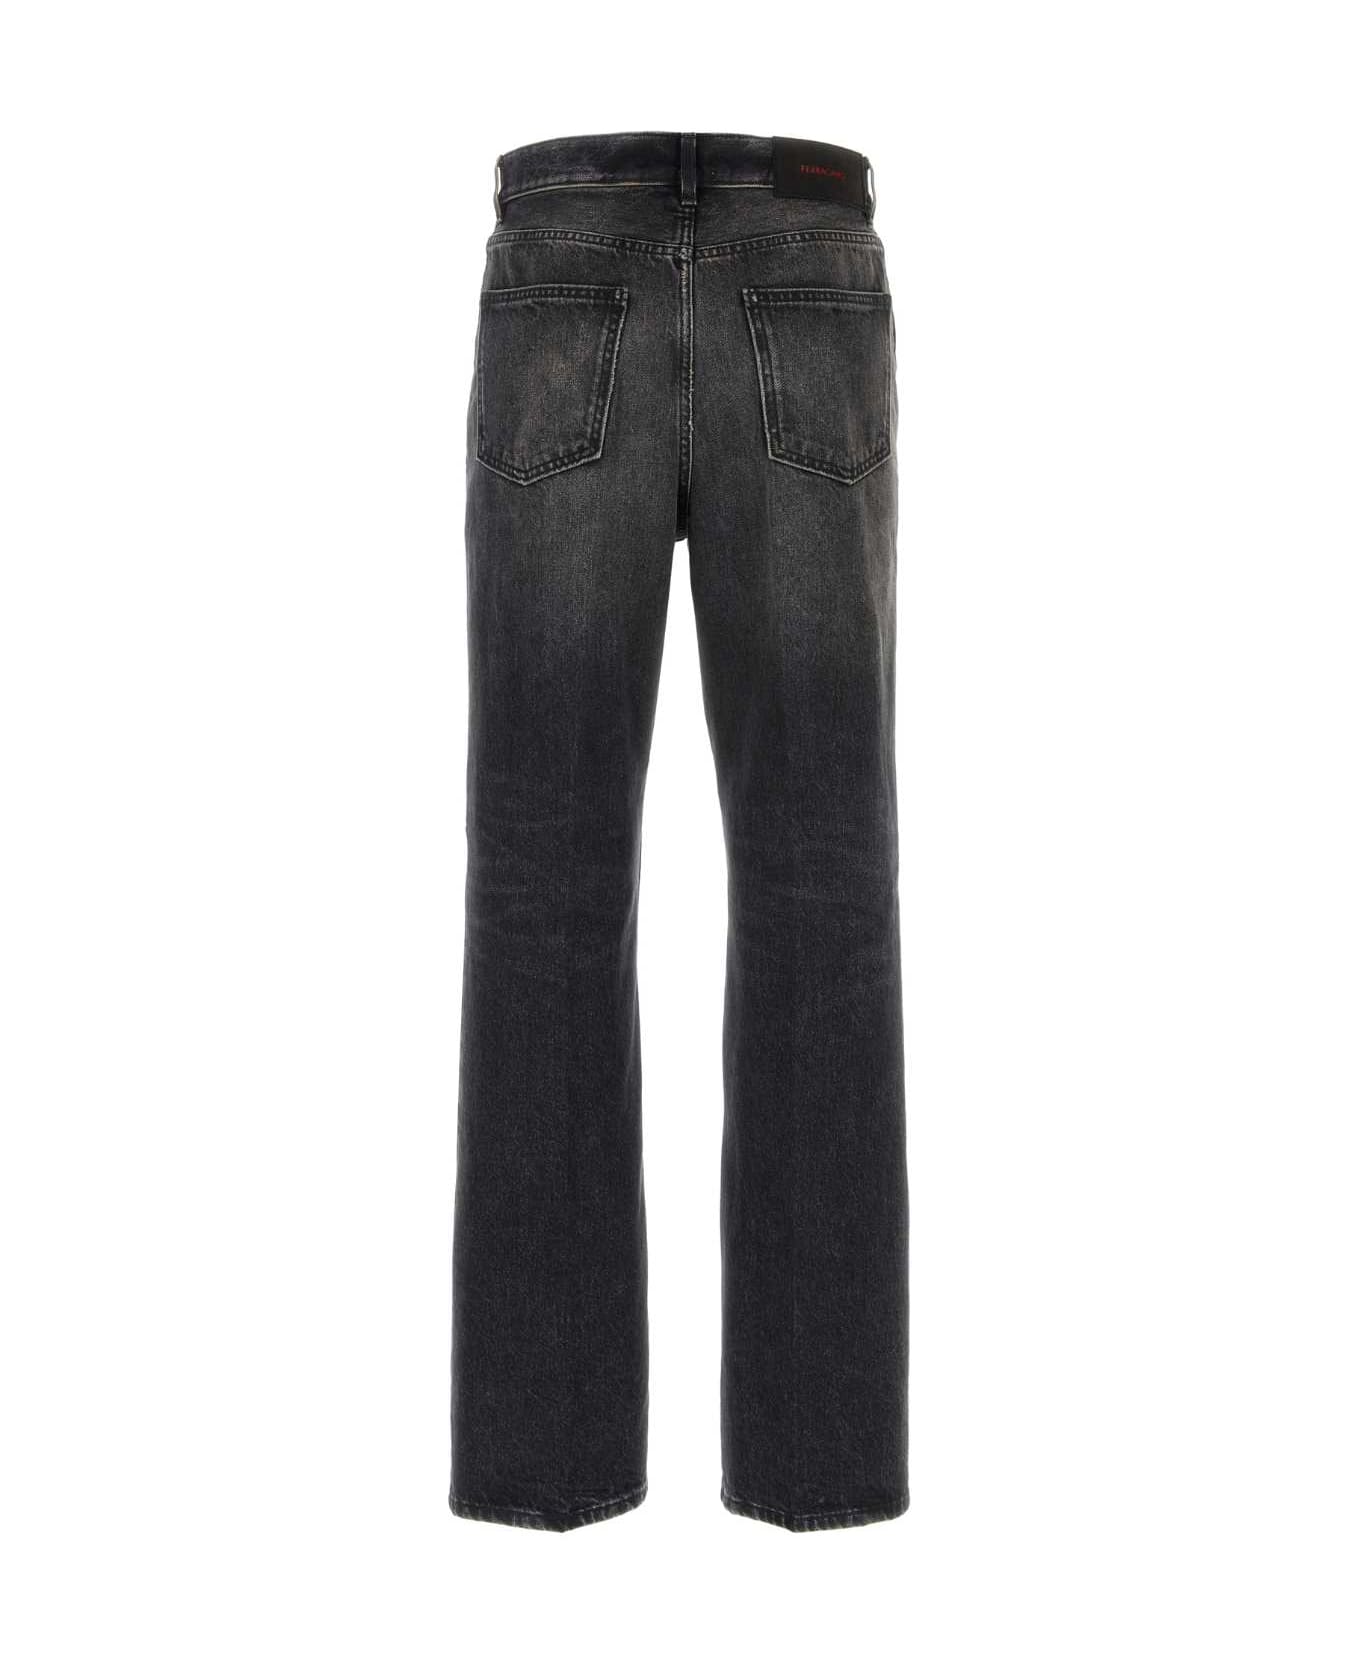 Ferragamo Black Denim Jeans - NERO